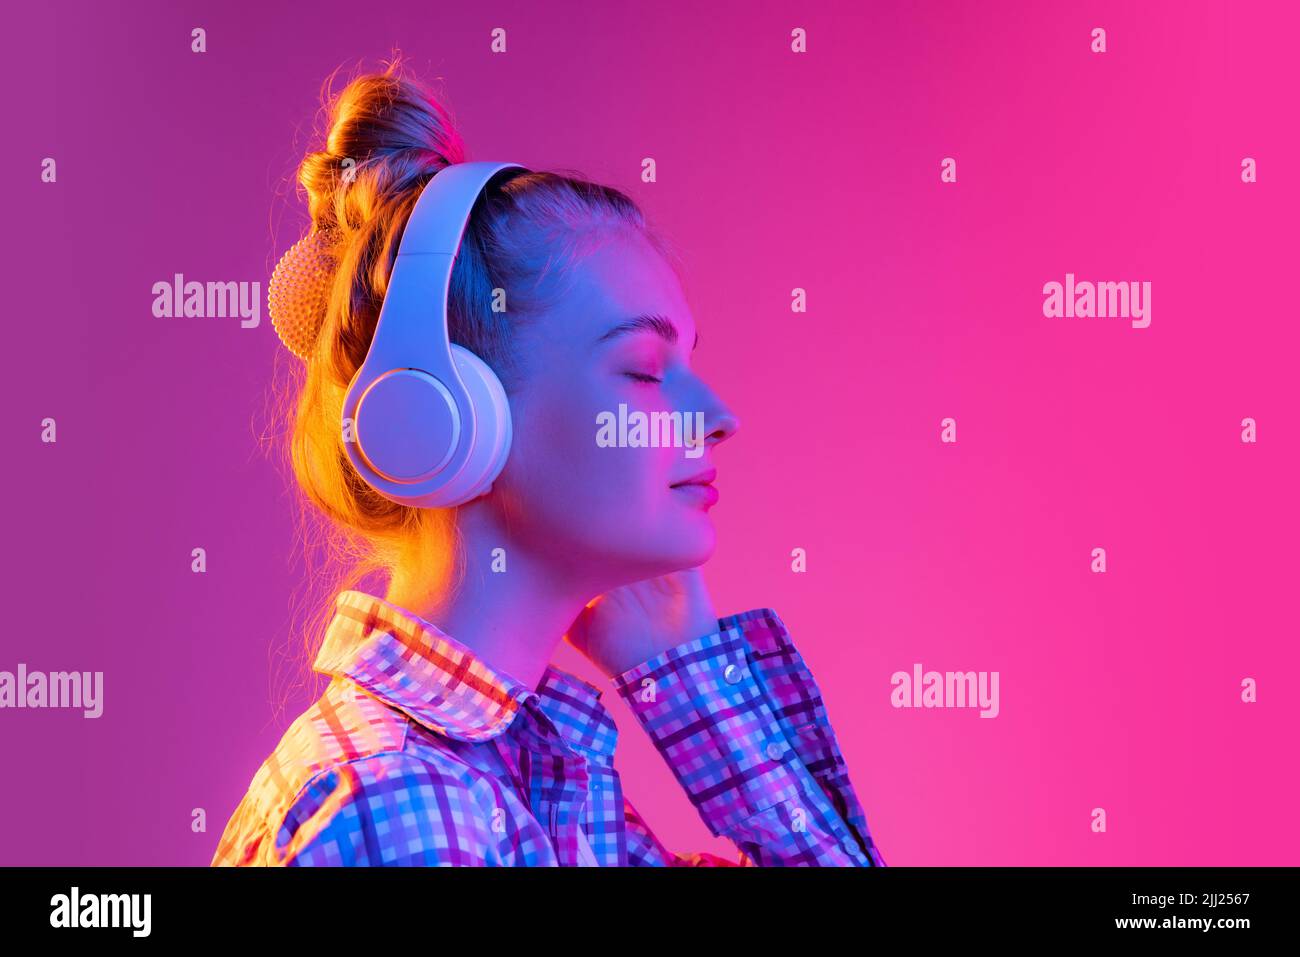 Porträt von entzückenden jungen Mädchen, Student trägt kariertes Hemd isoliert auf magentafarbenen Hintergrund in Neonlicht. Konzept von Schönheit, Kunst, Mode Stockfoto